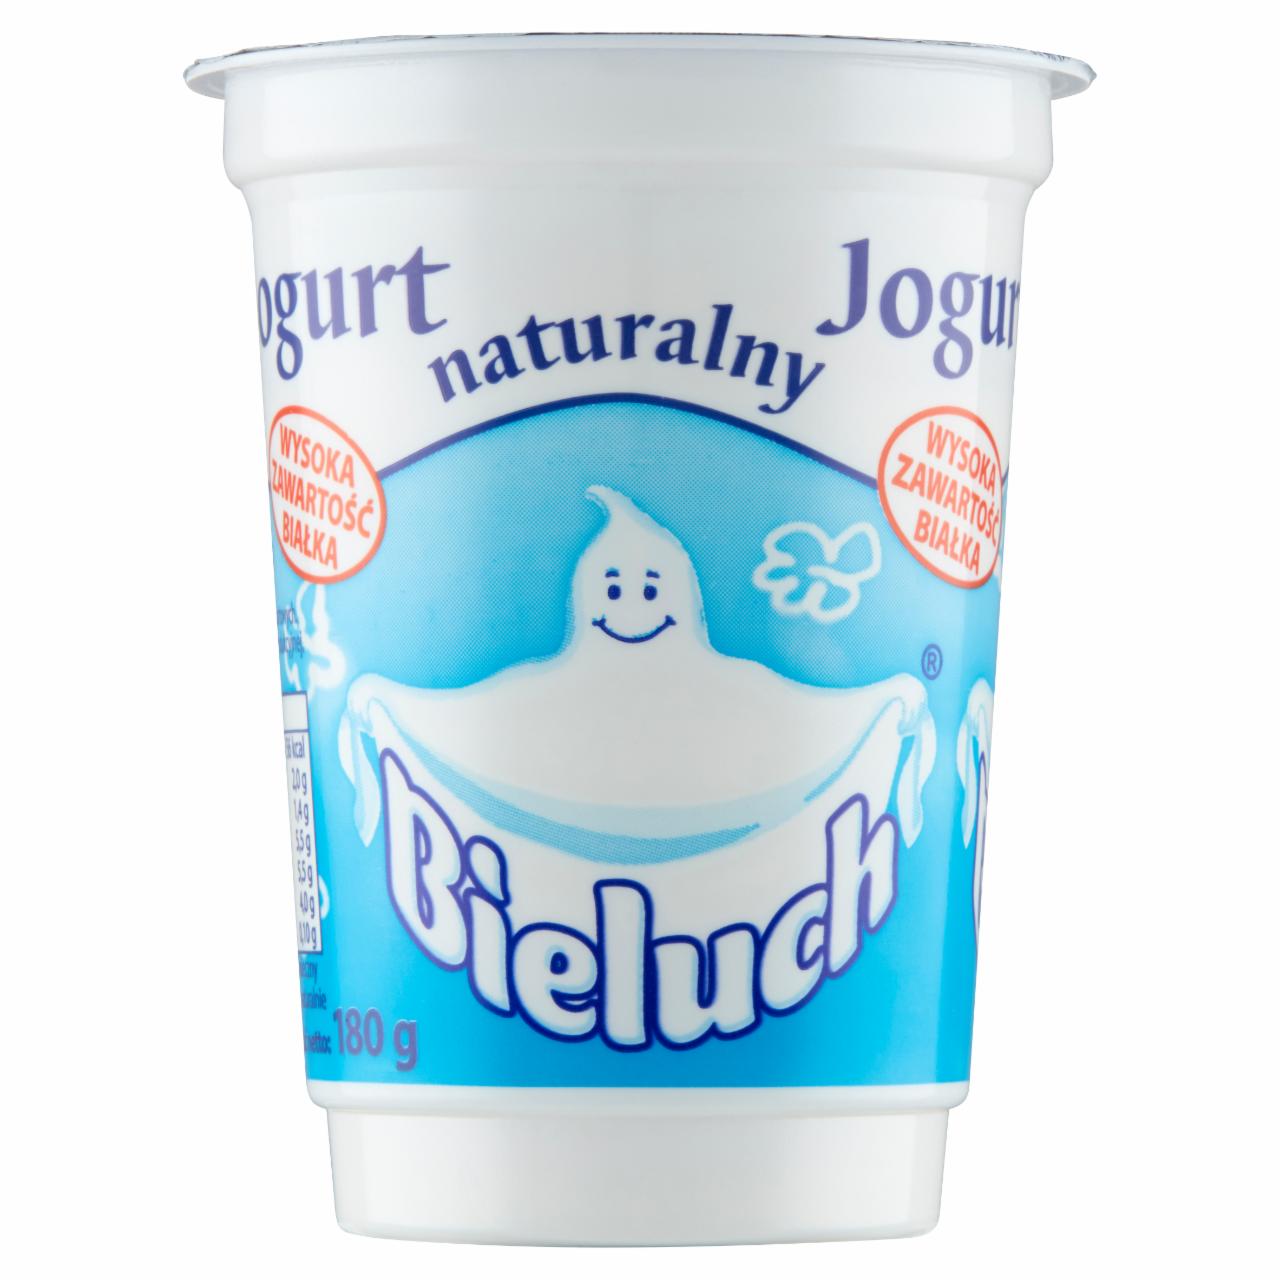 Zdjęcia - Bieluch Jogurt naturalny 180 g